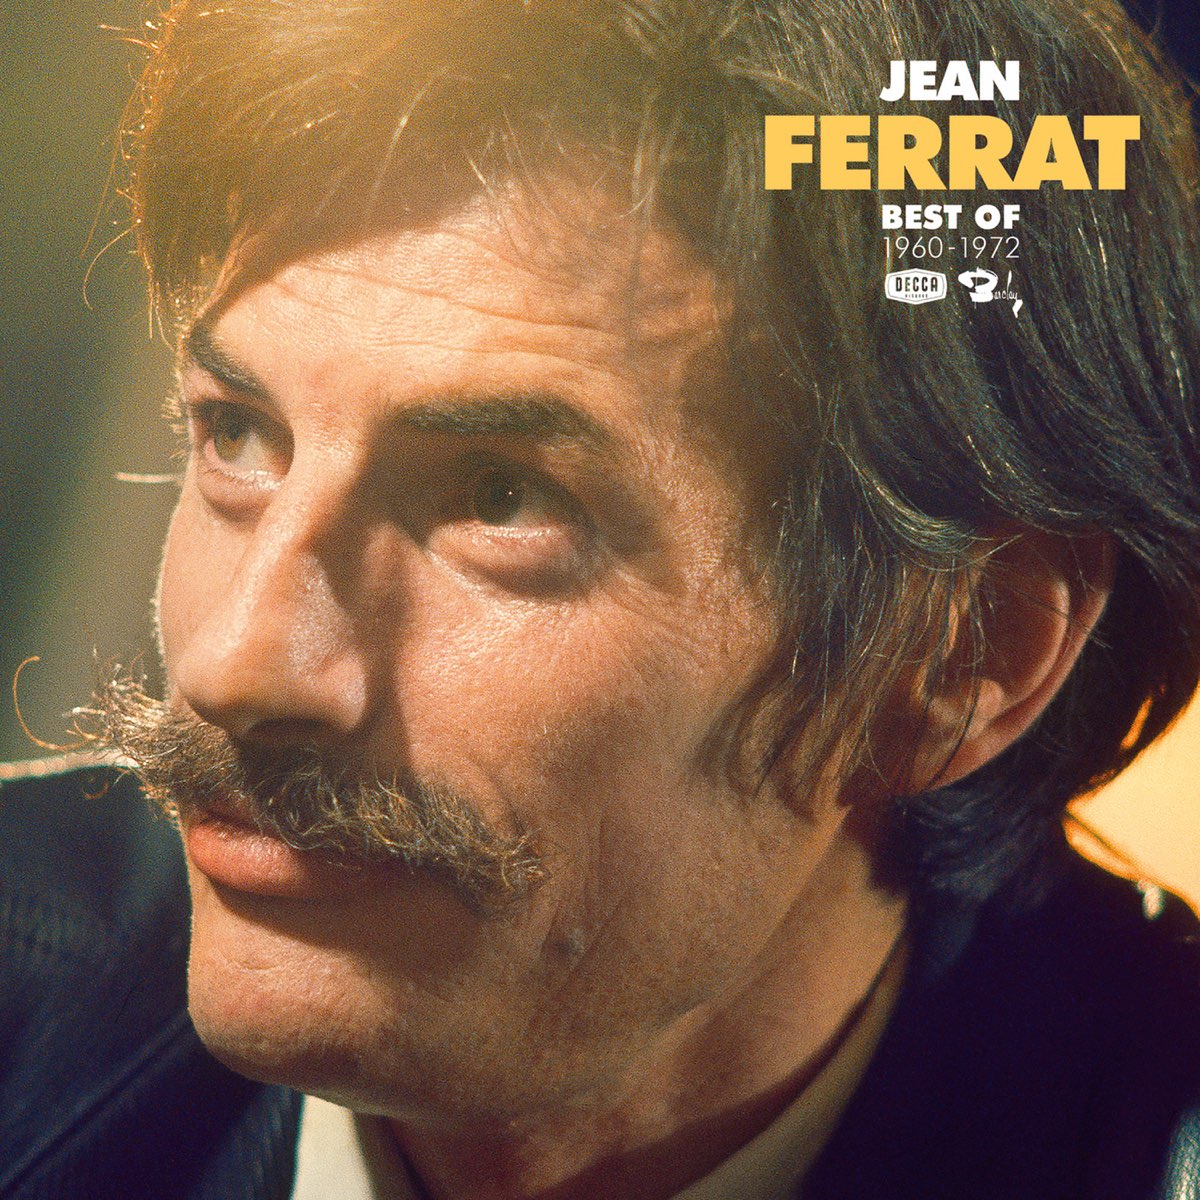 Best Of by Jean Ferrat on Apple Music